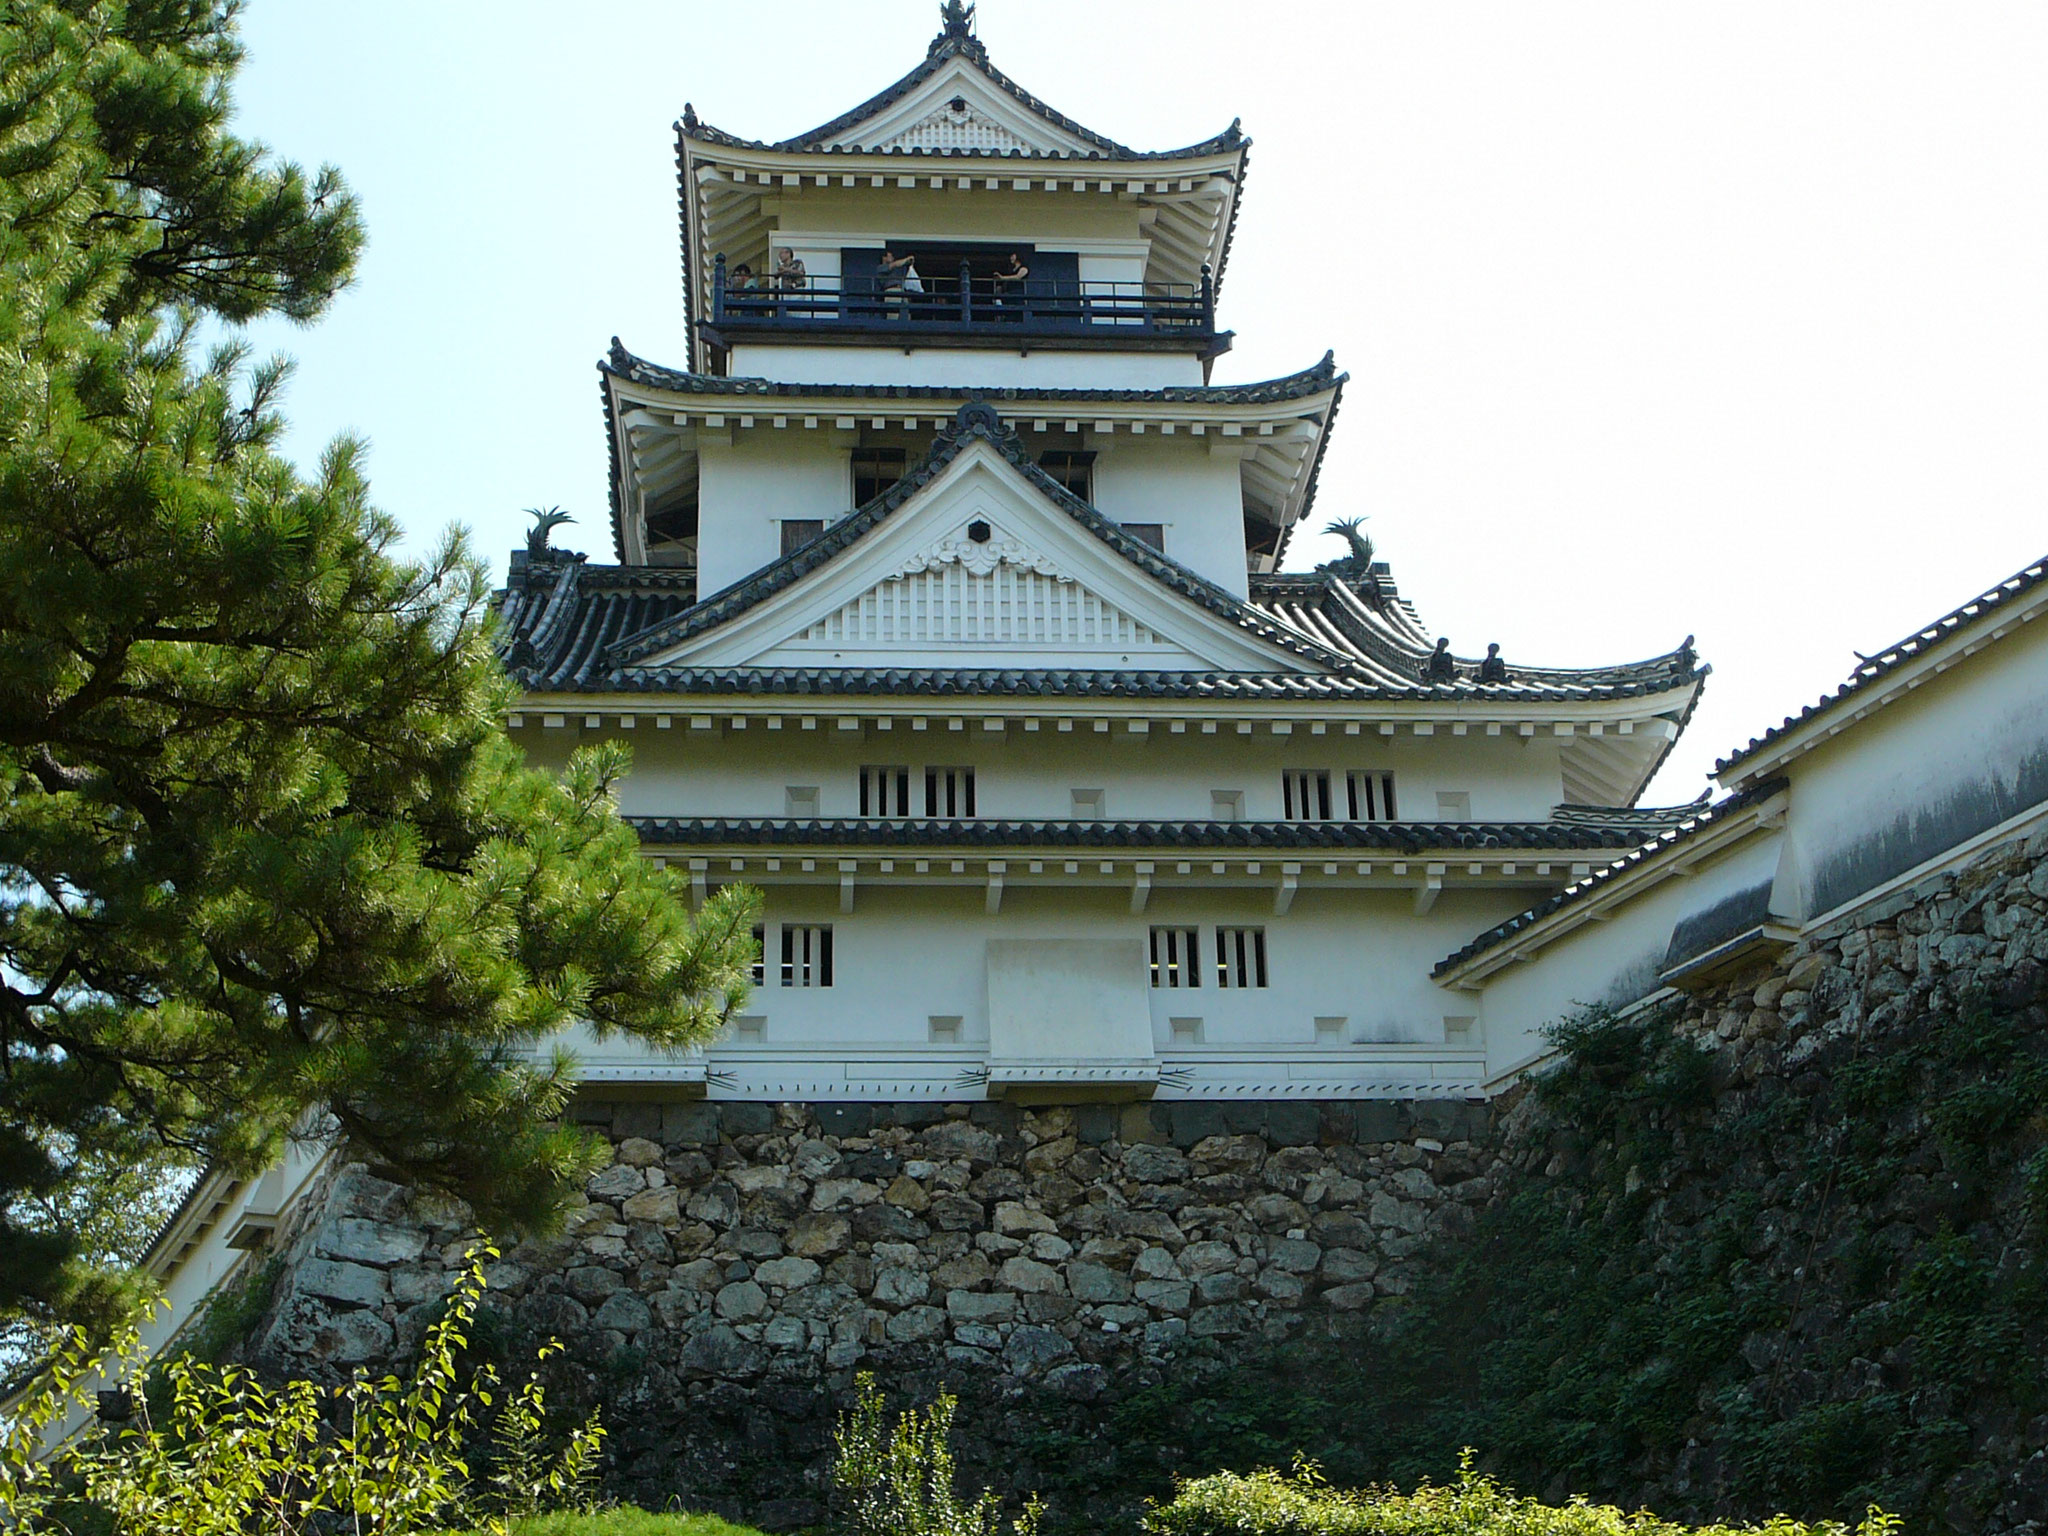 高知城（重要文化財）高知県高知市丸ノ内、1747年築の四重六階の独立式で望楼型天守